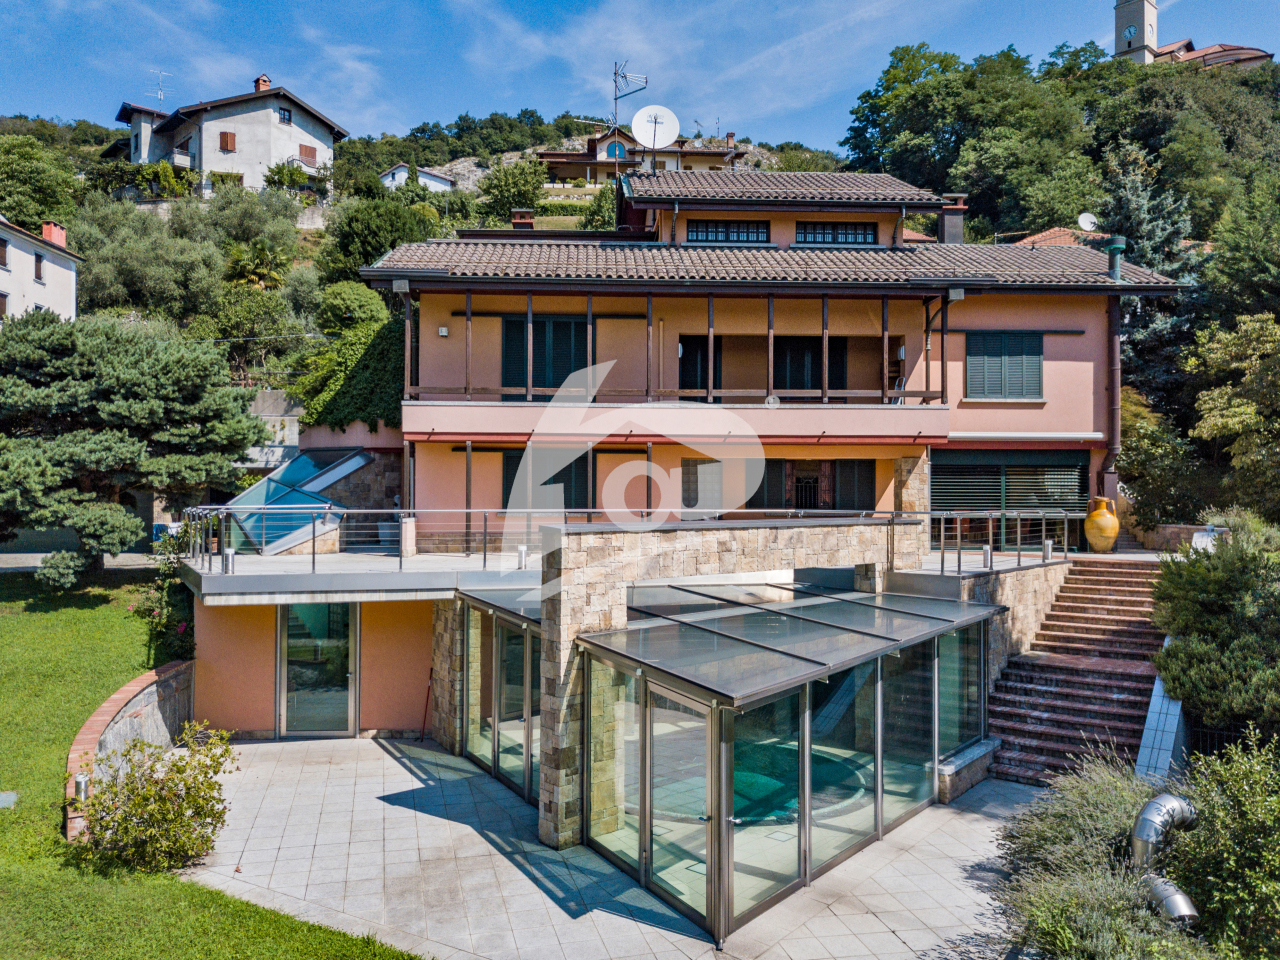 Villa in affitto a Caravate, 5 locali, prezzo € 2.500 | PortaleAgenzieImmobiliari.it